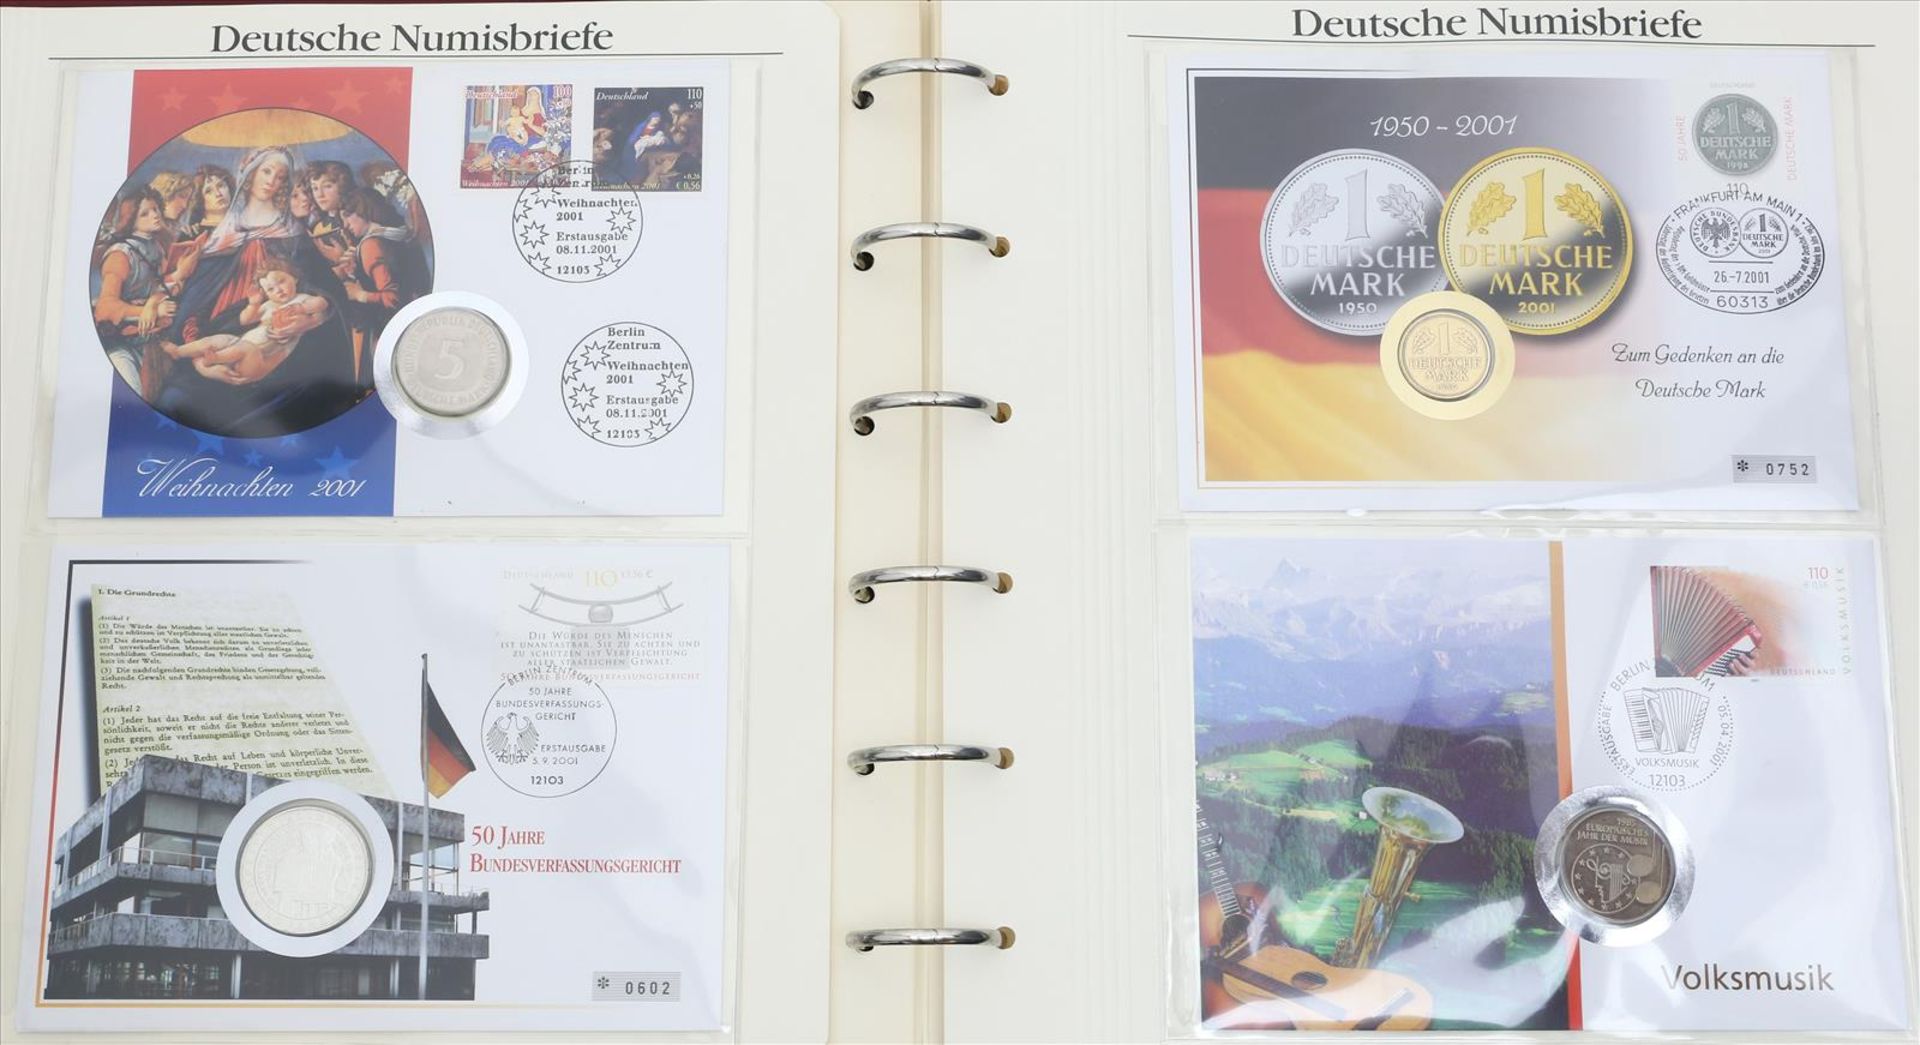 Album mit 19 deutschen Numisbriefen, 2001-2002.Über 100 DM Nennwert der enthaltenen DM-